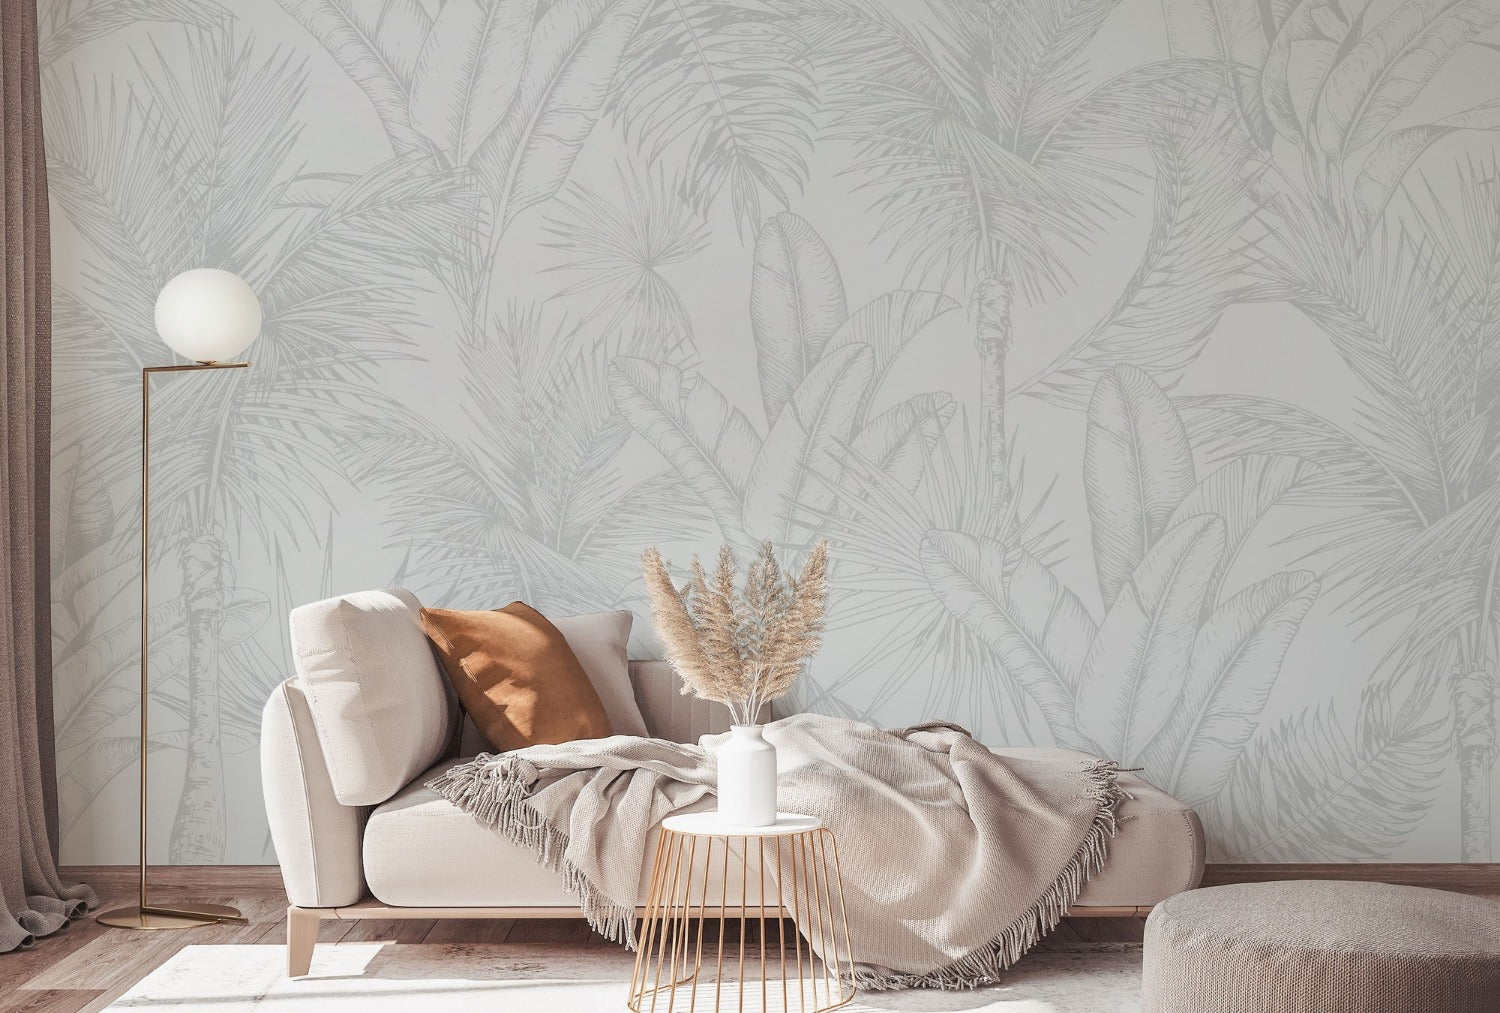 Tropics botanical mural wallpaper in living room